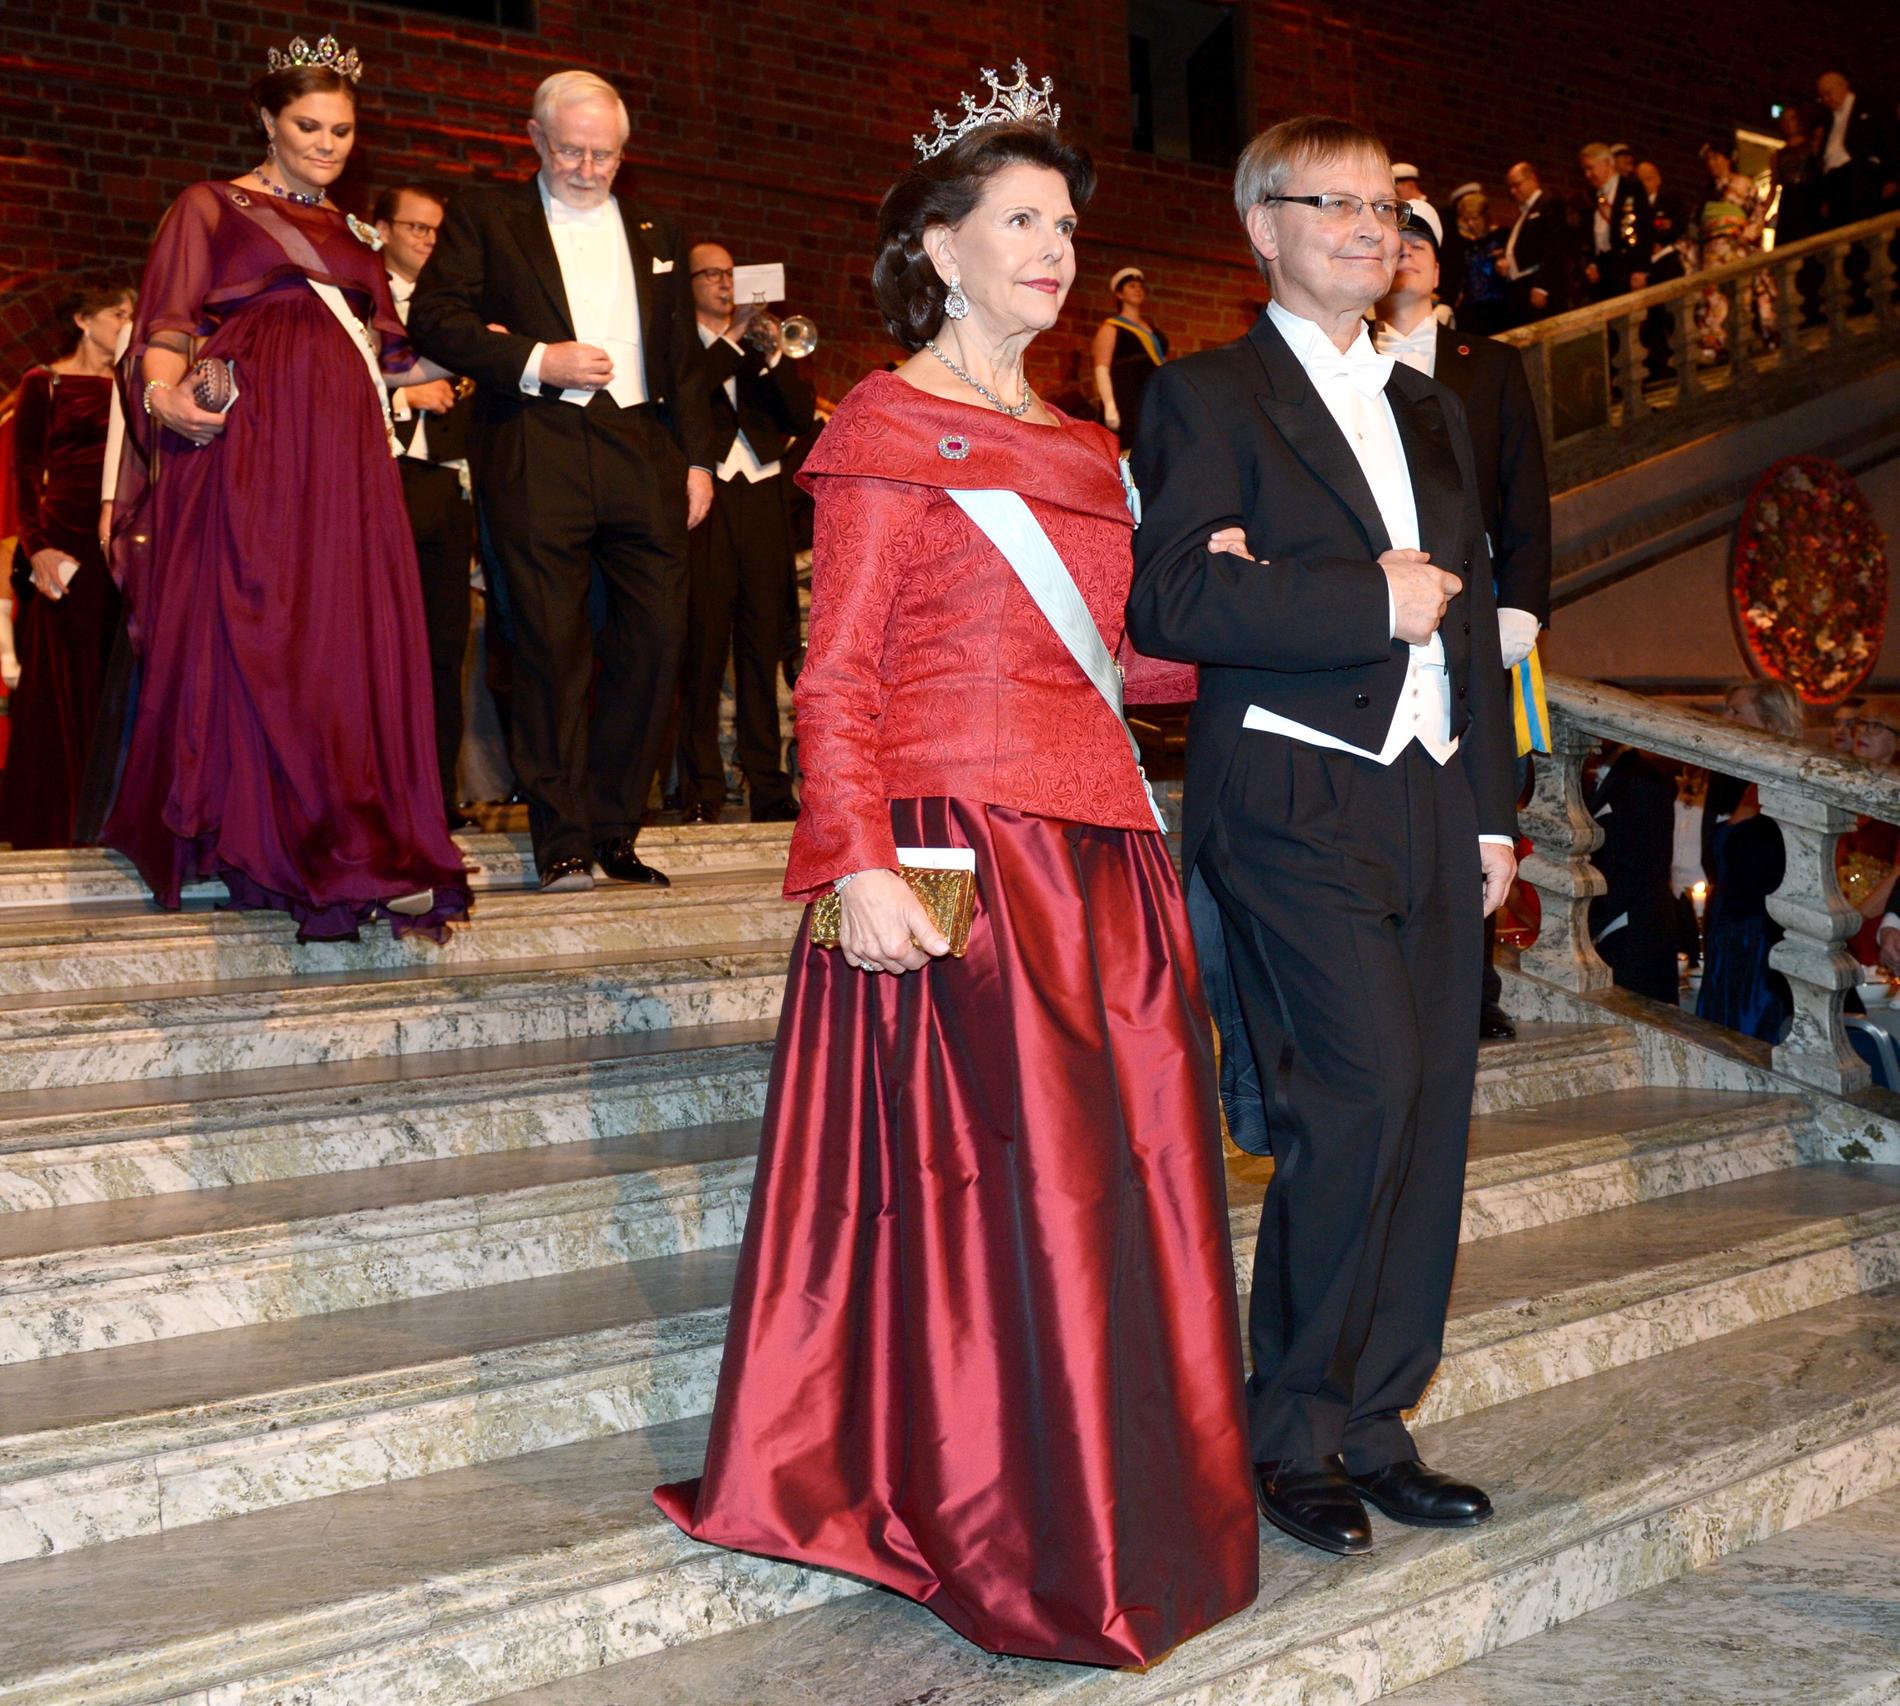 Drottning Silvia och Carl-Henrik Heldin, ordförande för Nobelkommittén, anländer till Blå hallen inför Nobelbanketten i Stadshuset i Stockholm på torsdagen.